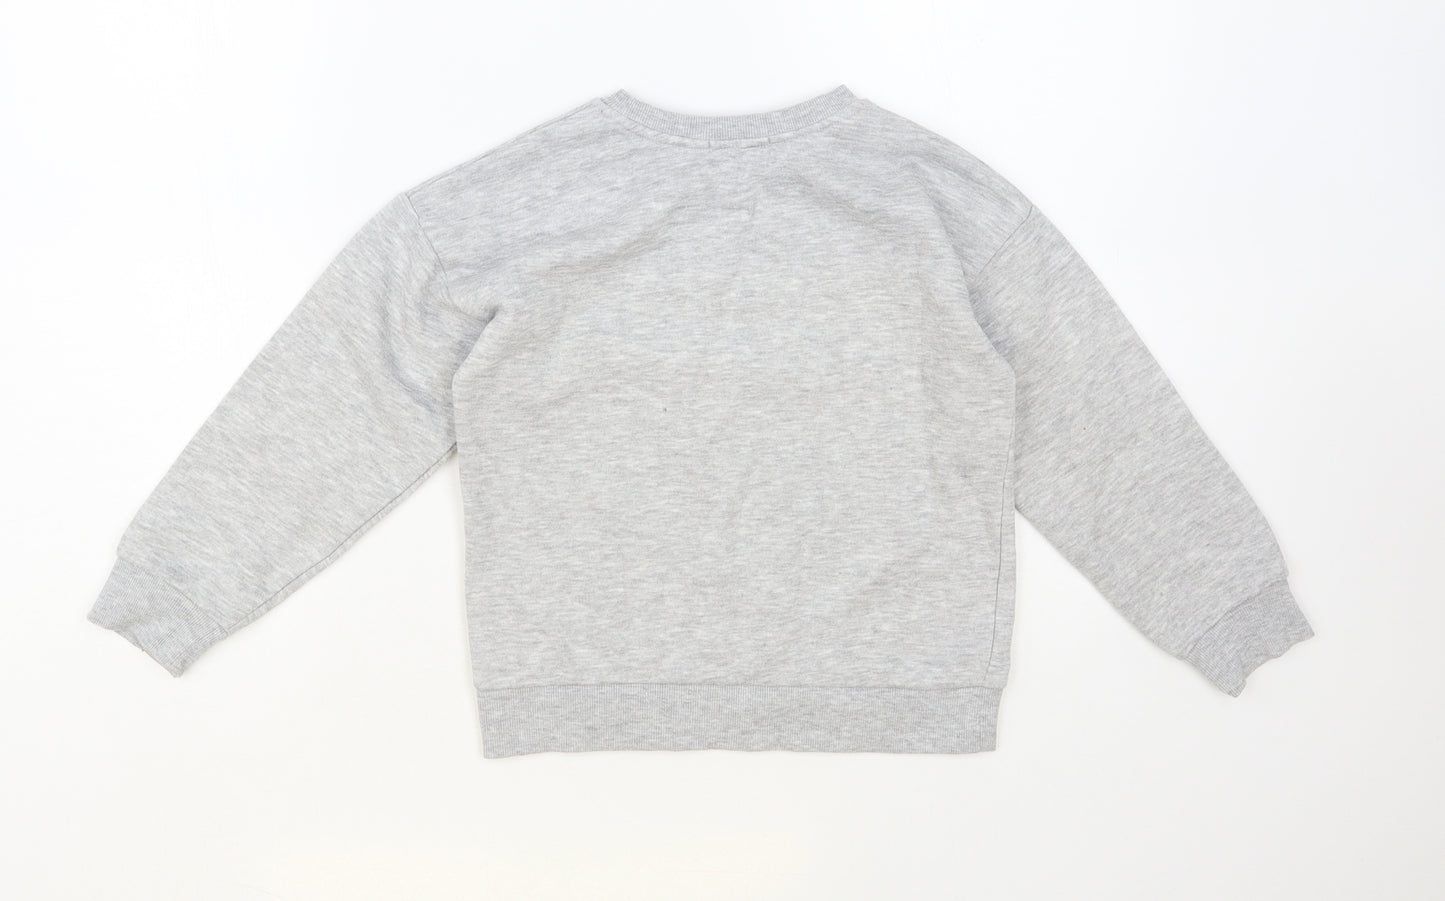 Primark Girls Grey Cotton Henley Sweatshirt Size 7-8 Years Pullover - Wonderful